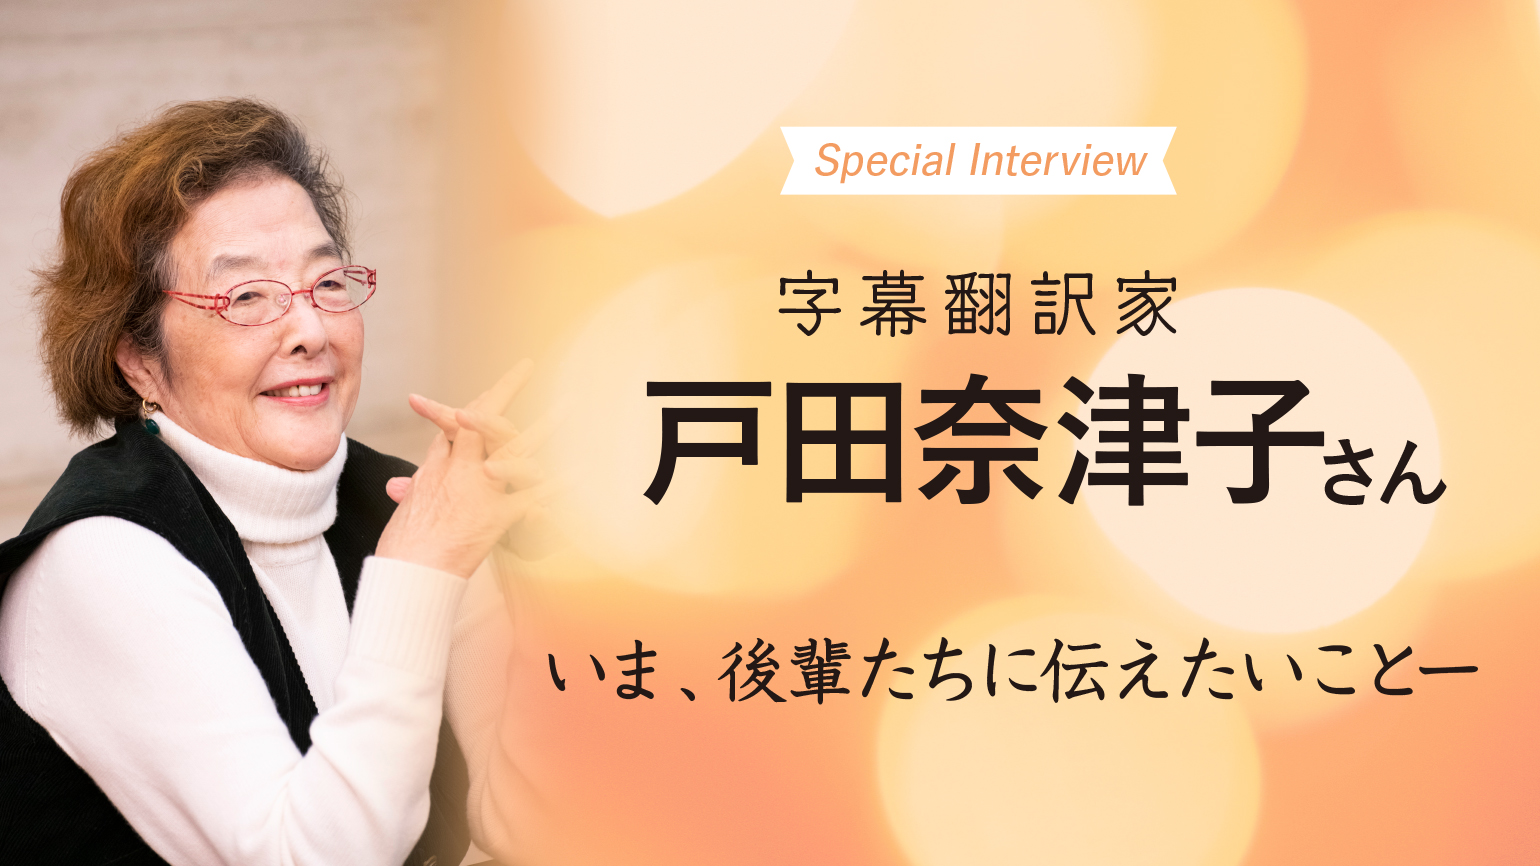 戸田奈津子さん Special Interview